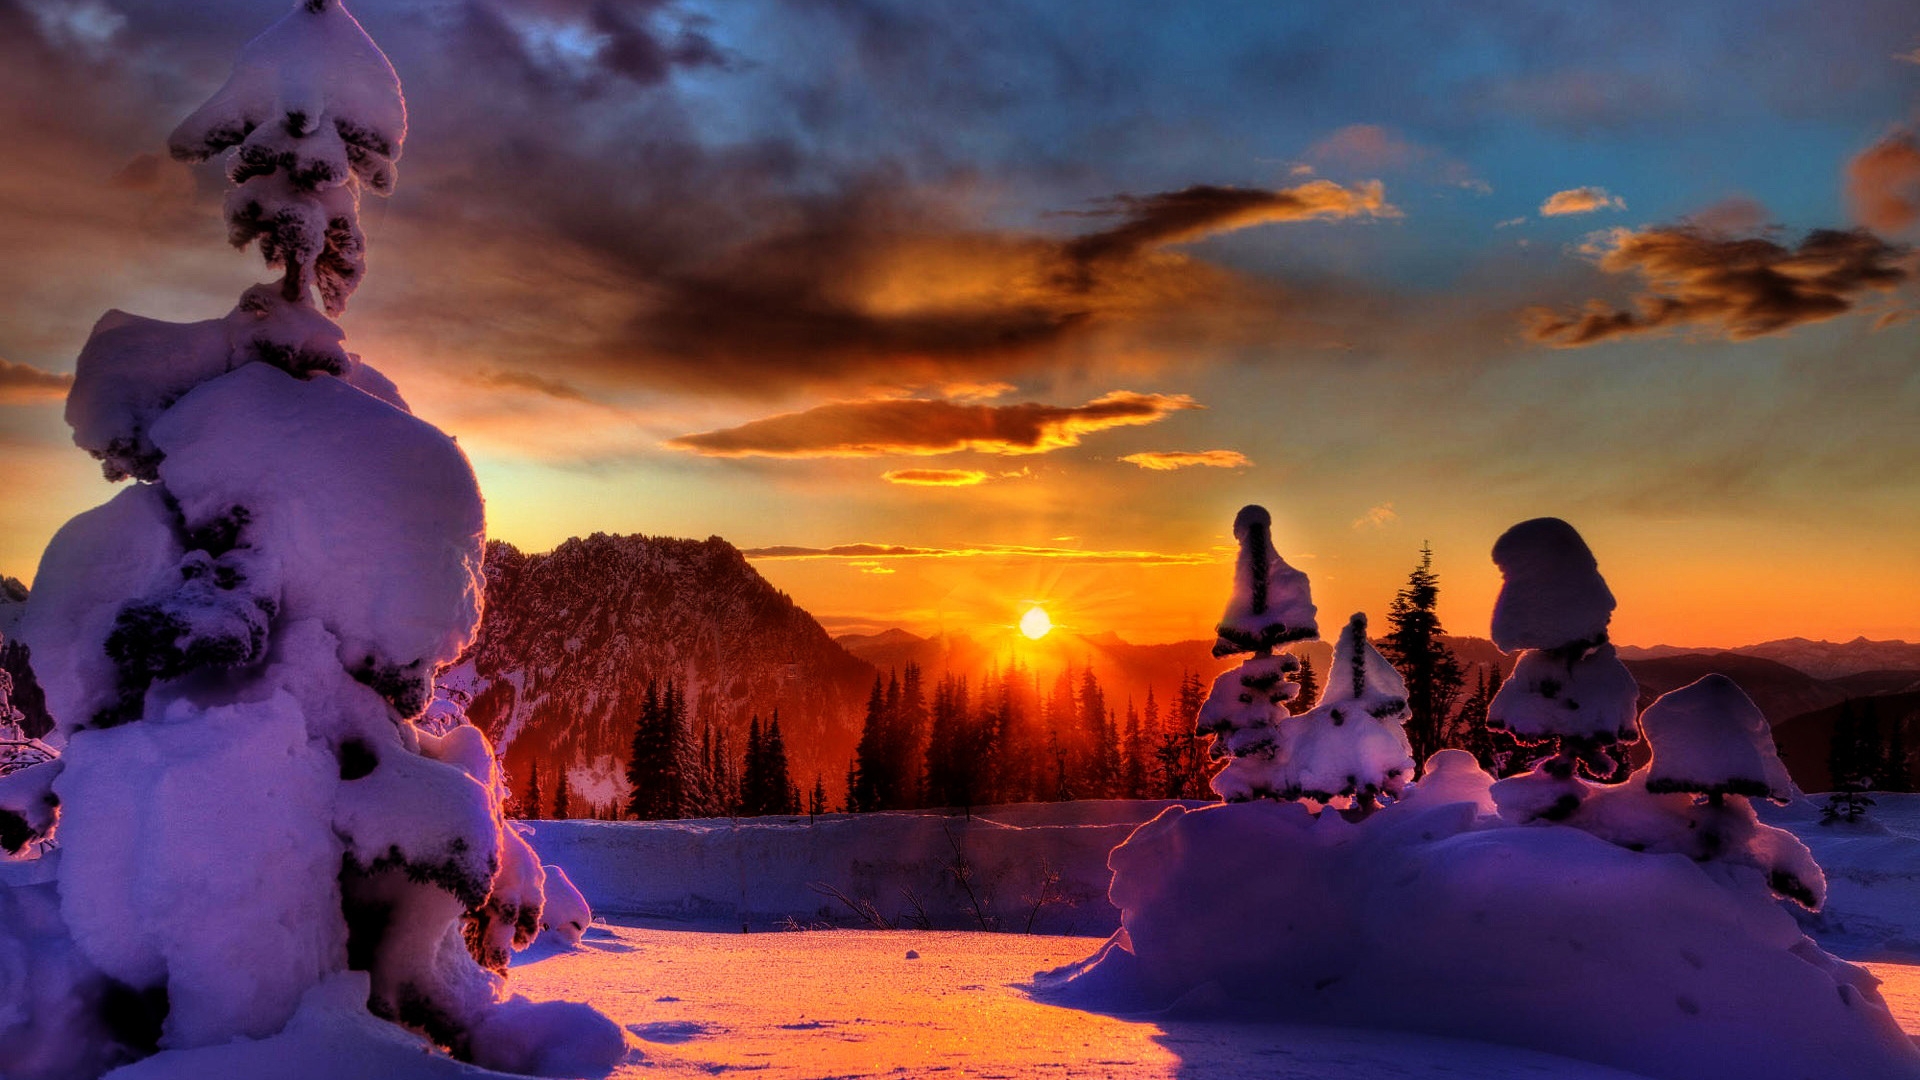 Winter Sunset for 1920 x 1080 HDTV 1080p resolution